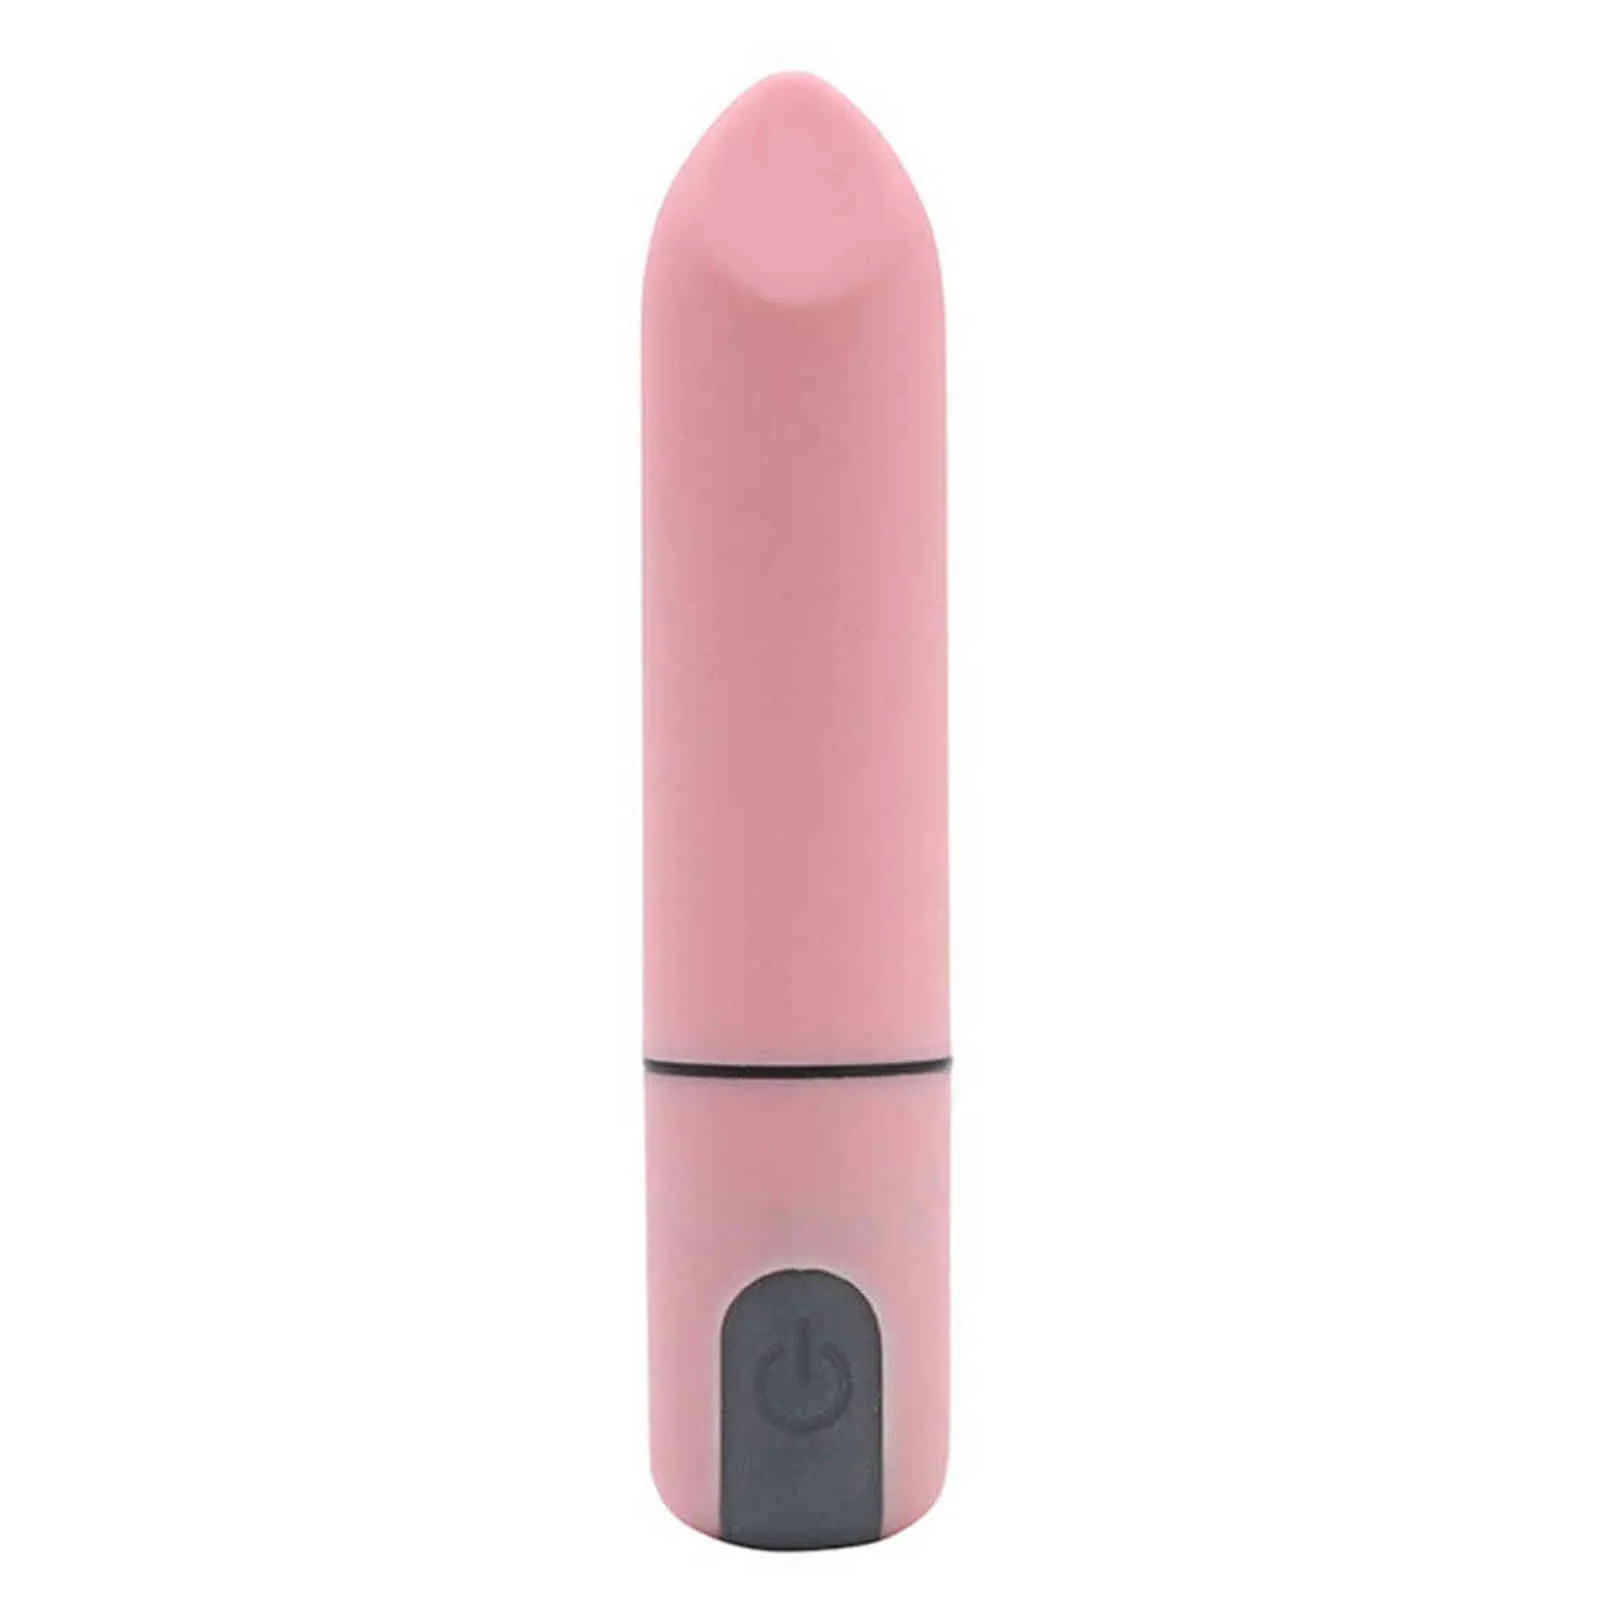 NXY jouets pour adultes charge sans fil conversion de fréquence rouge à lèvres oeuf sautant balle vibrateur bâton de massage jouets sexuels pour adultes pour femmes 1130